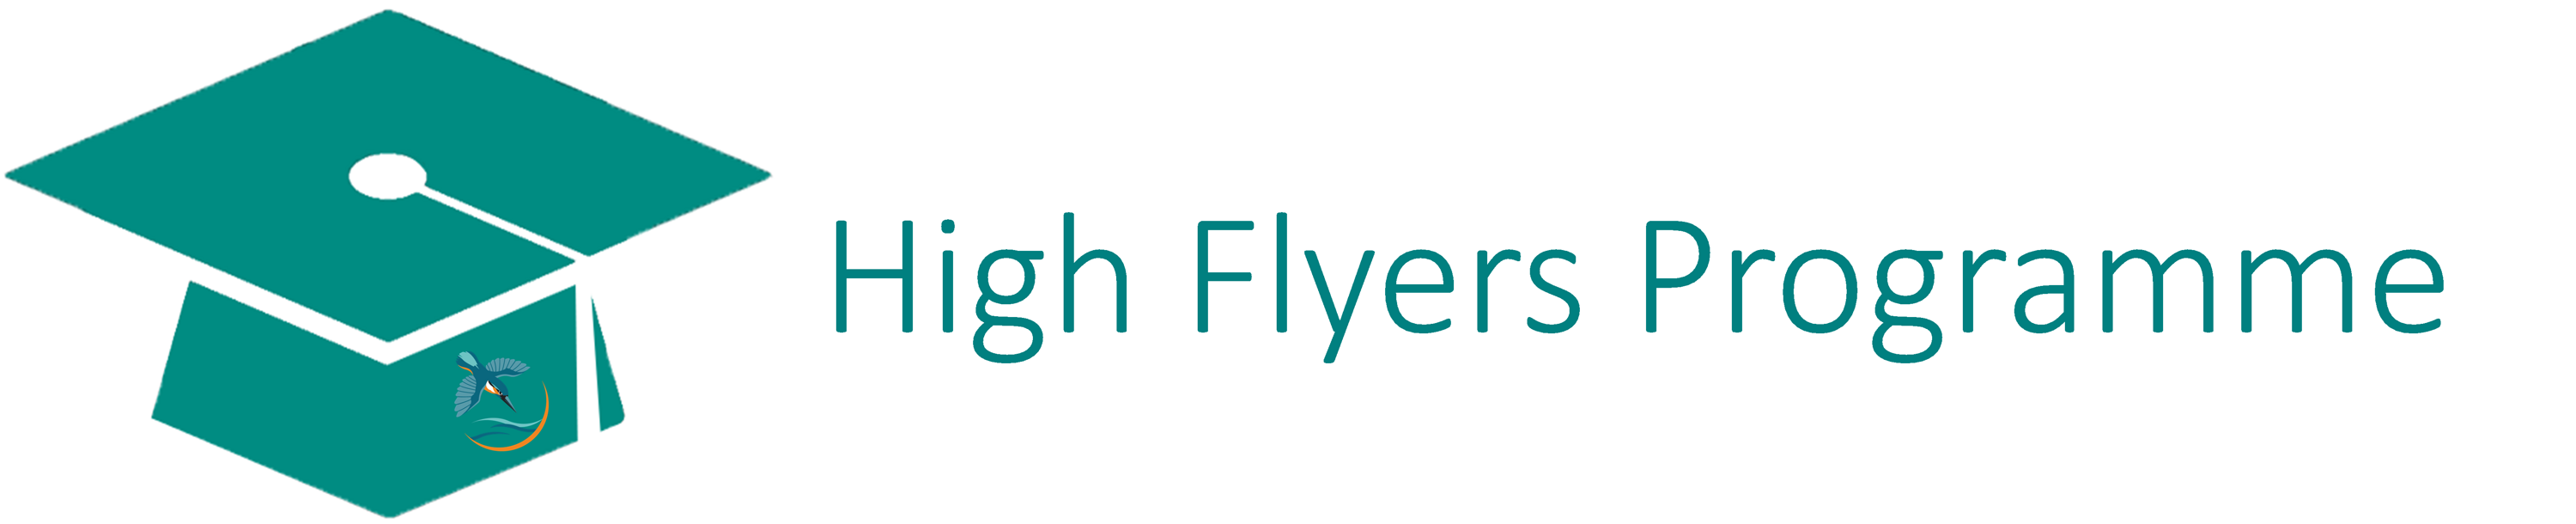 High Flyers Programme